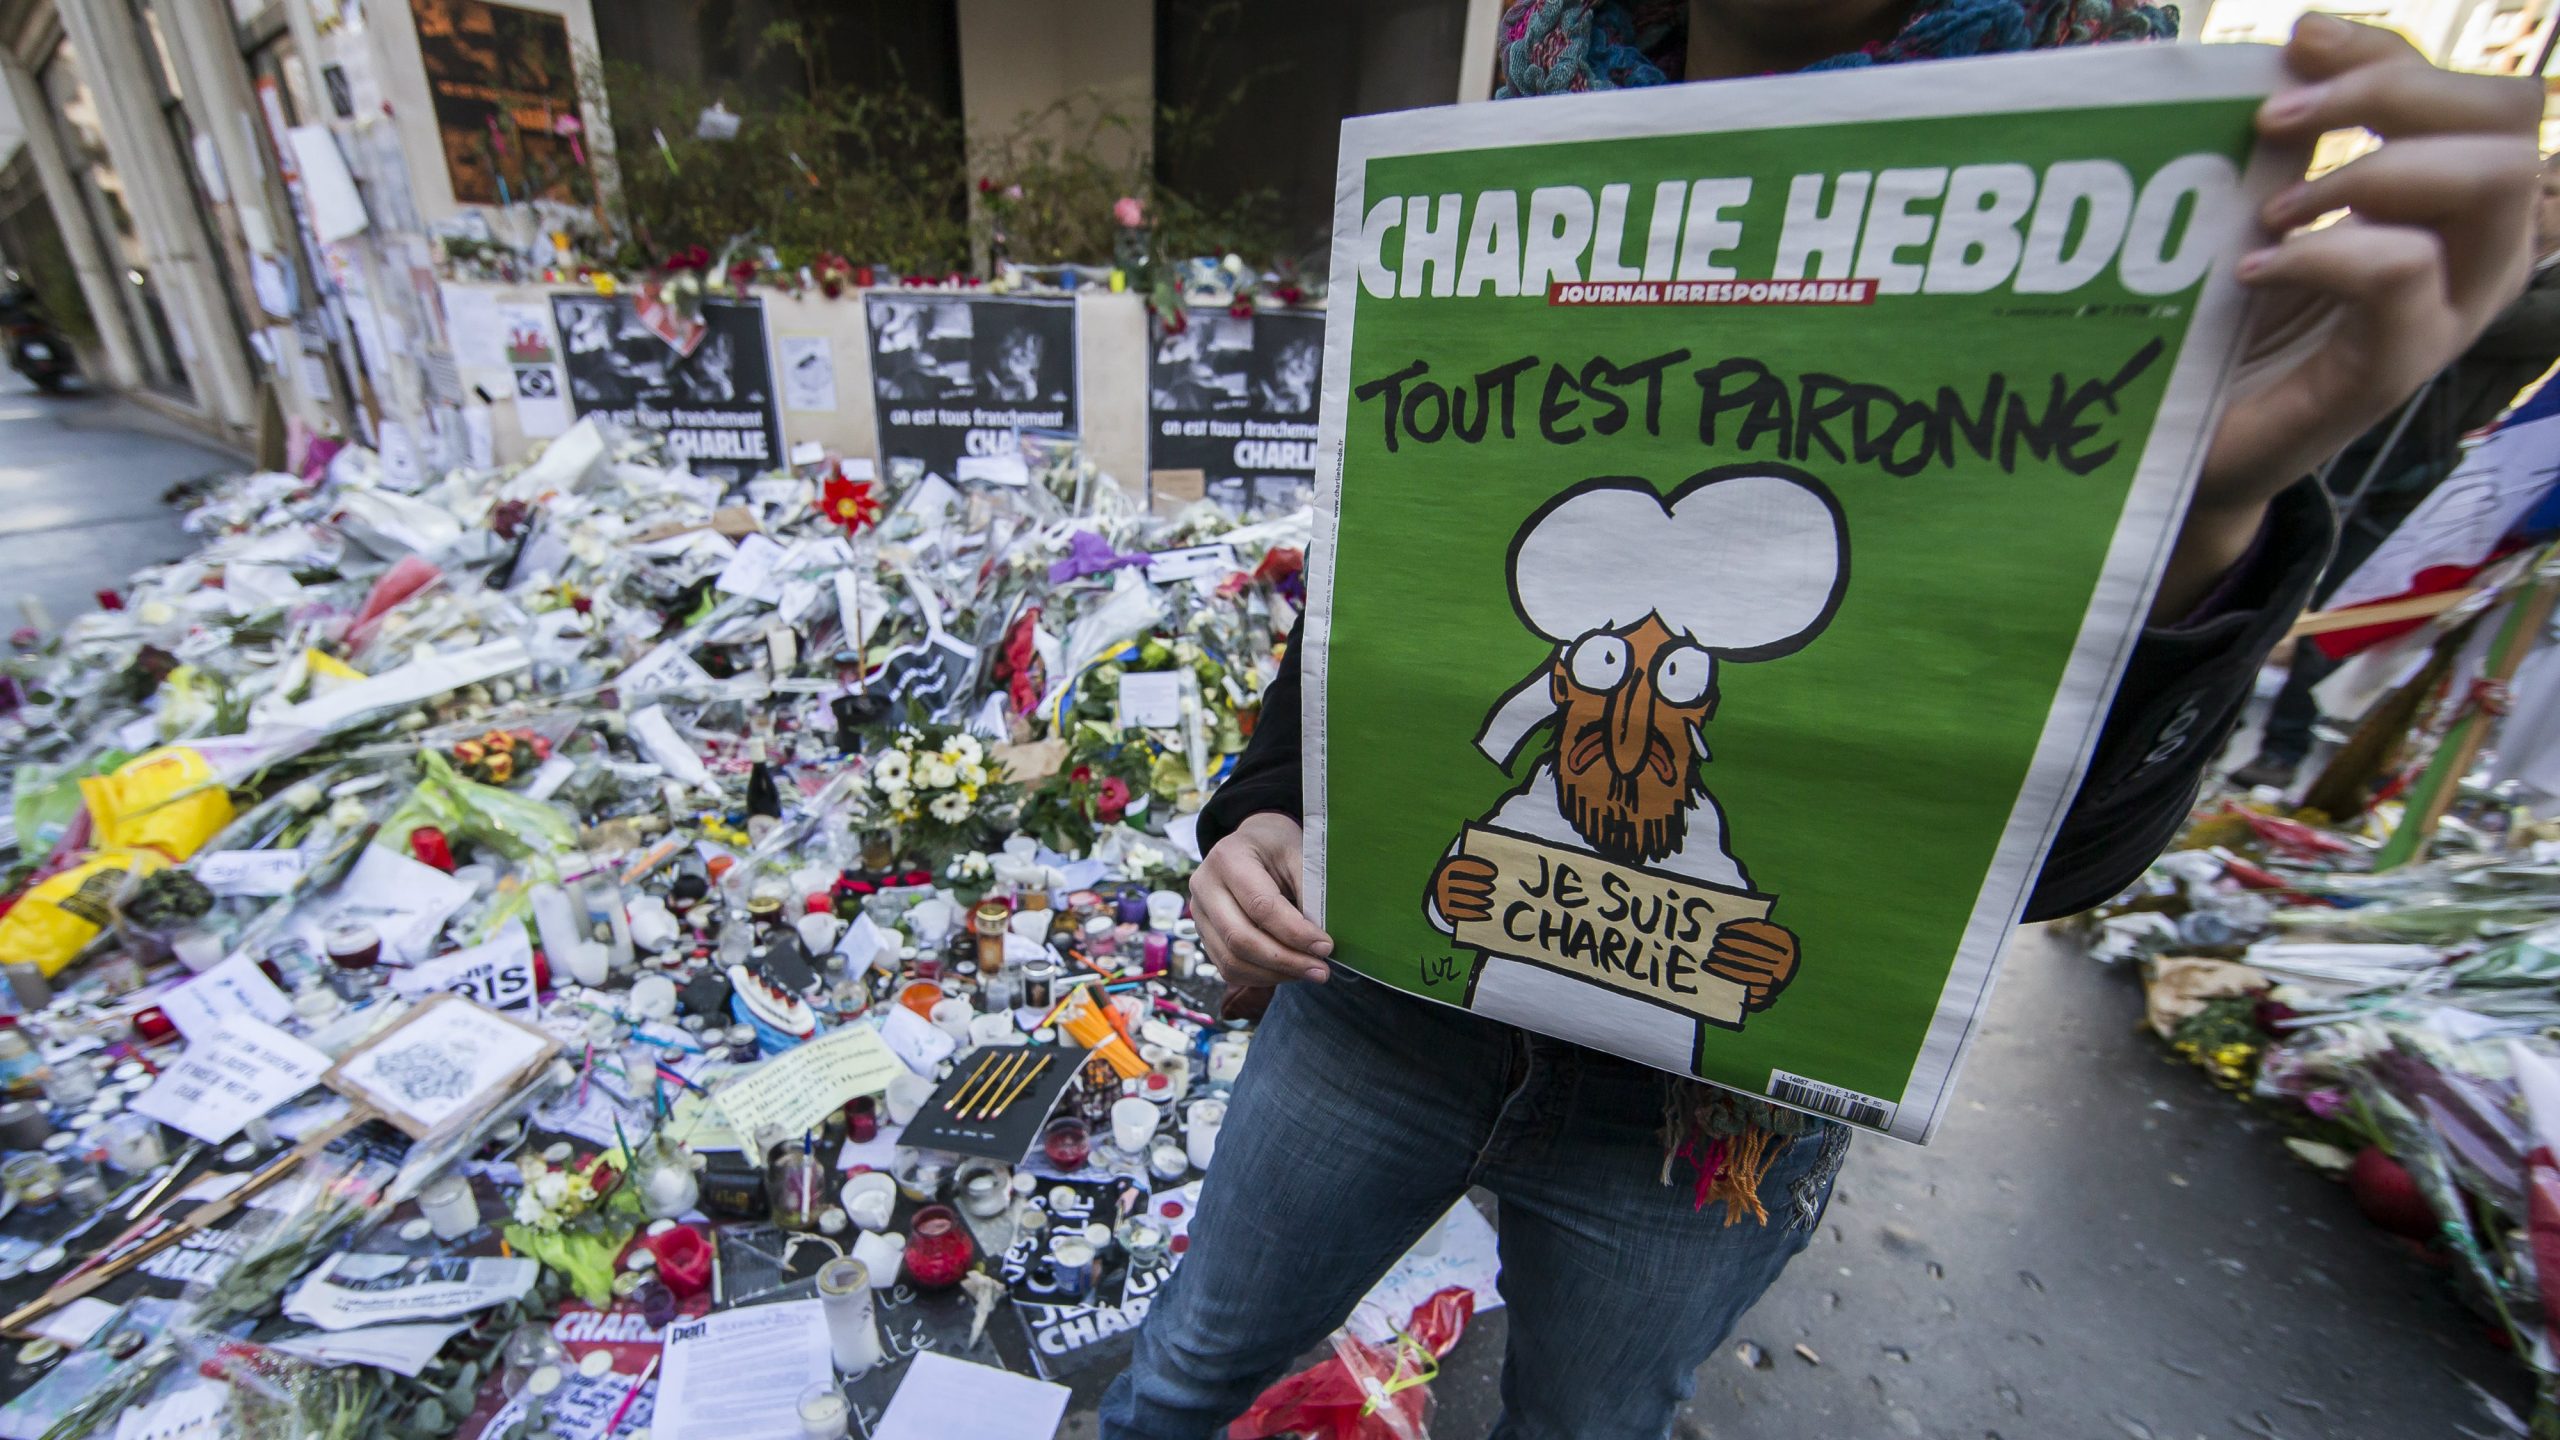 Ekstremista povezan s napadom na Šarli Ebdo izručen Francuskoj 1